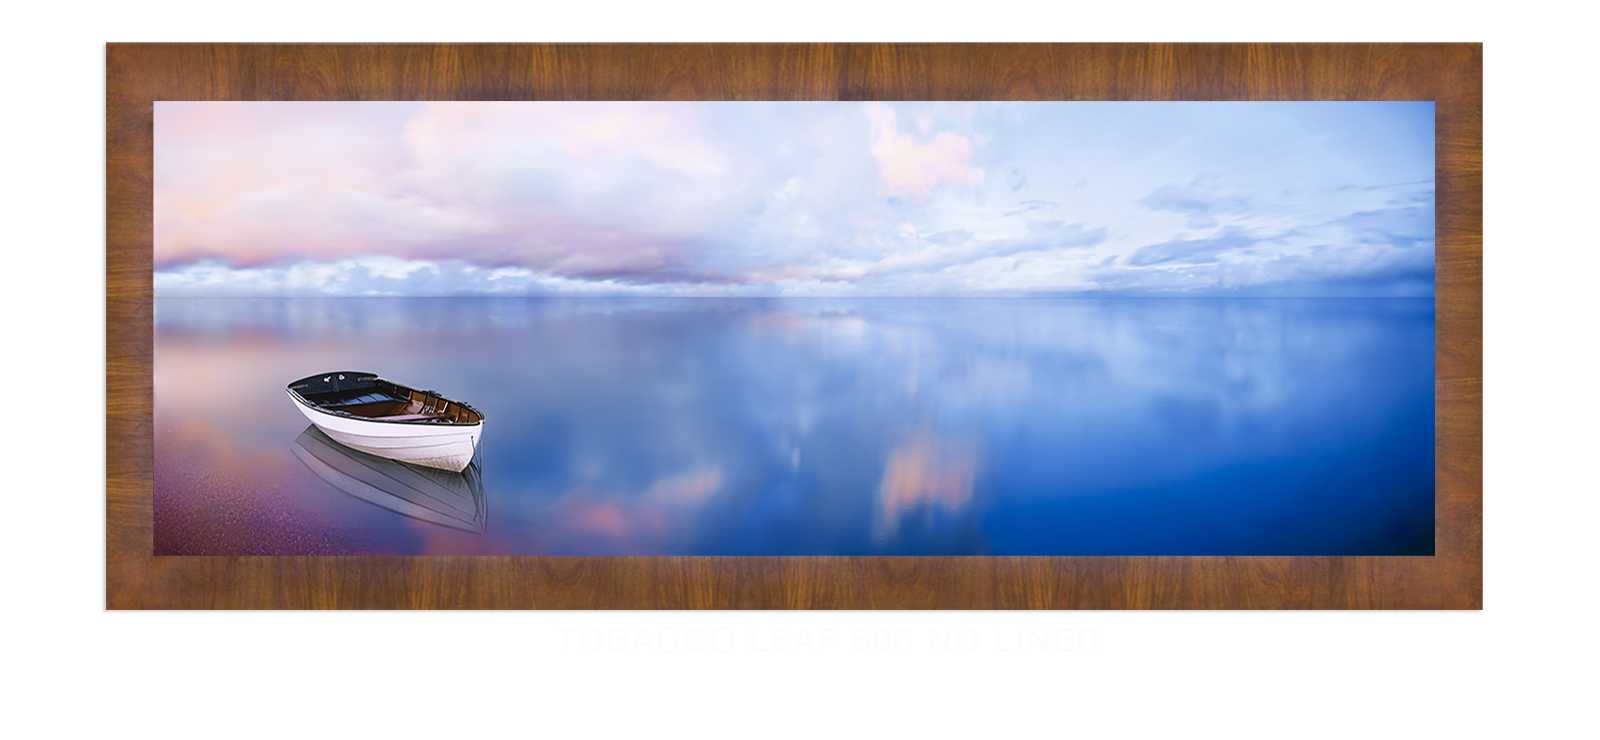 25BLUELAKEBOAT Tobacco Leaf 606 w_No Liner T